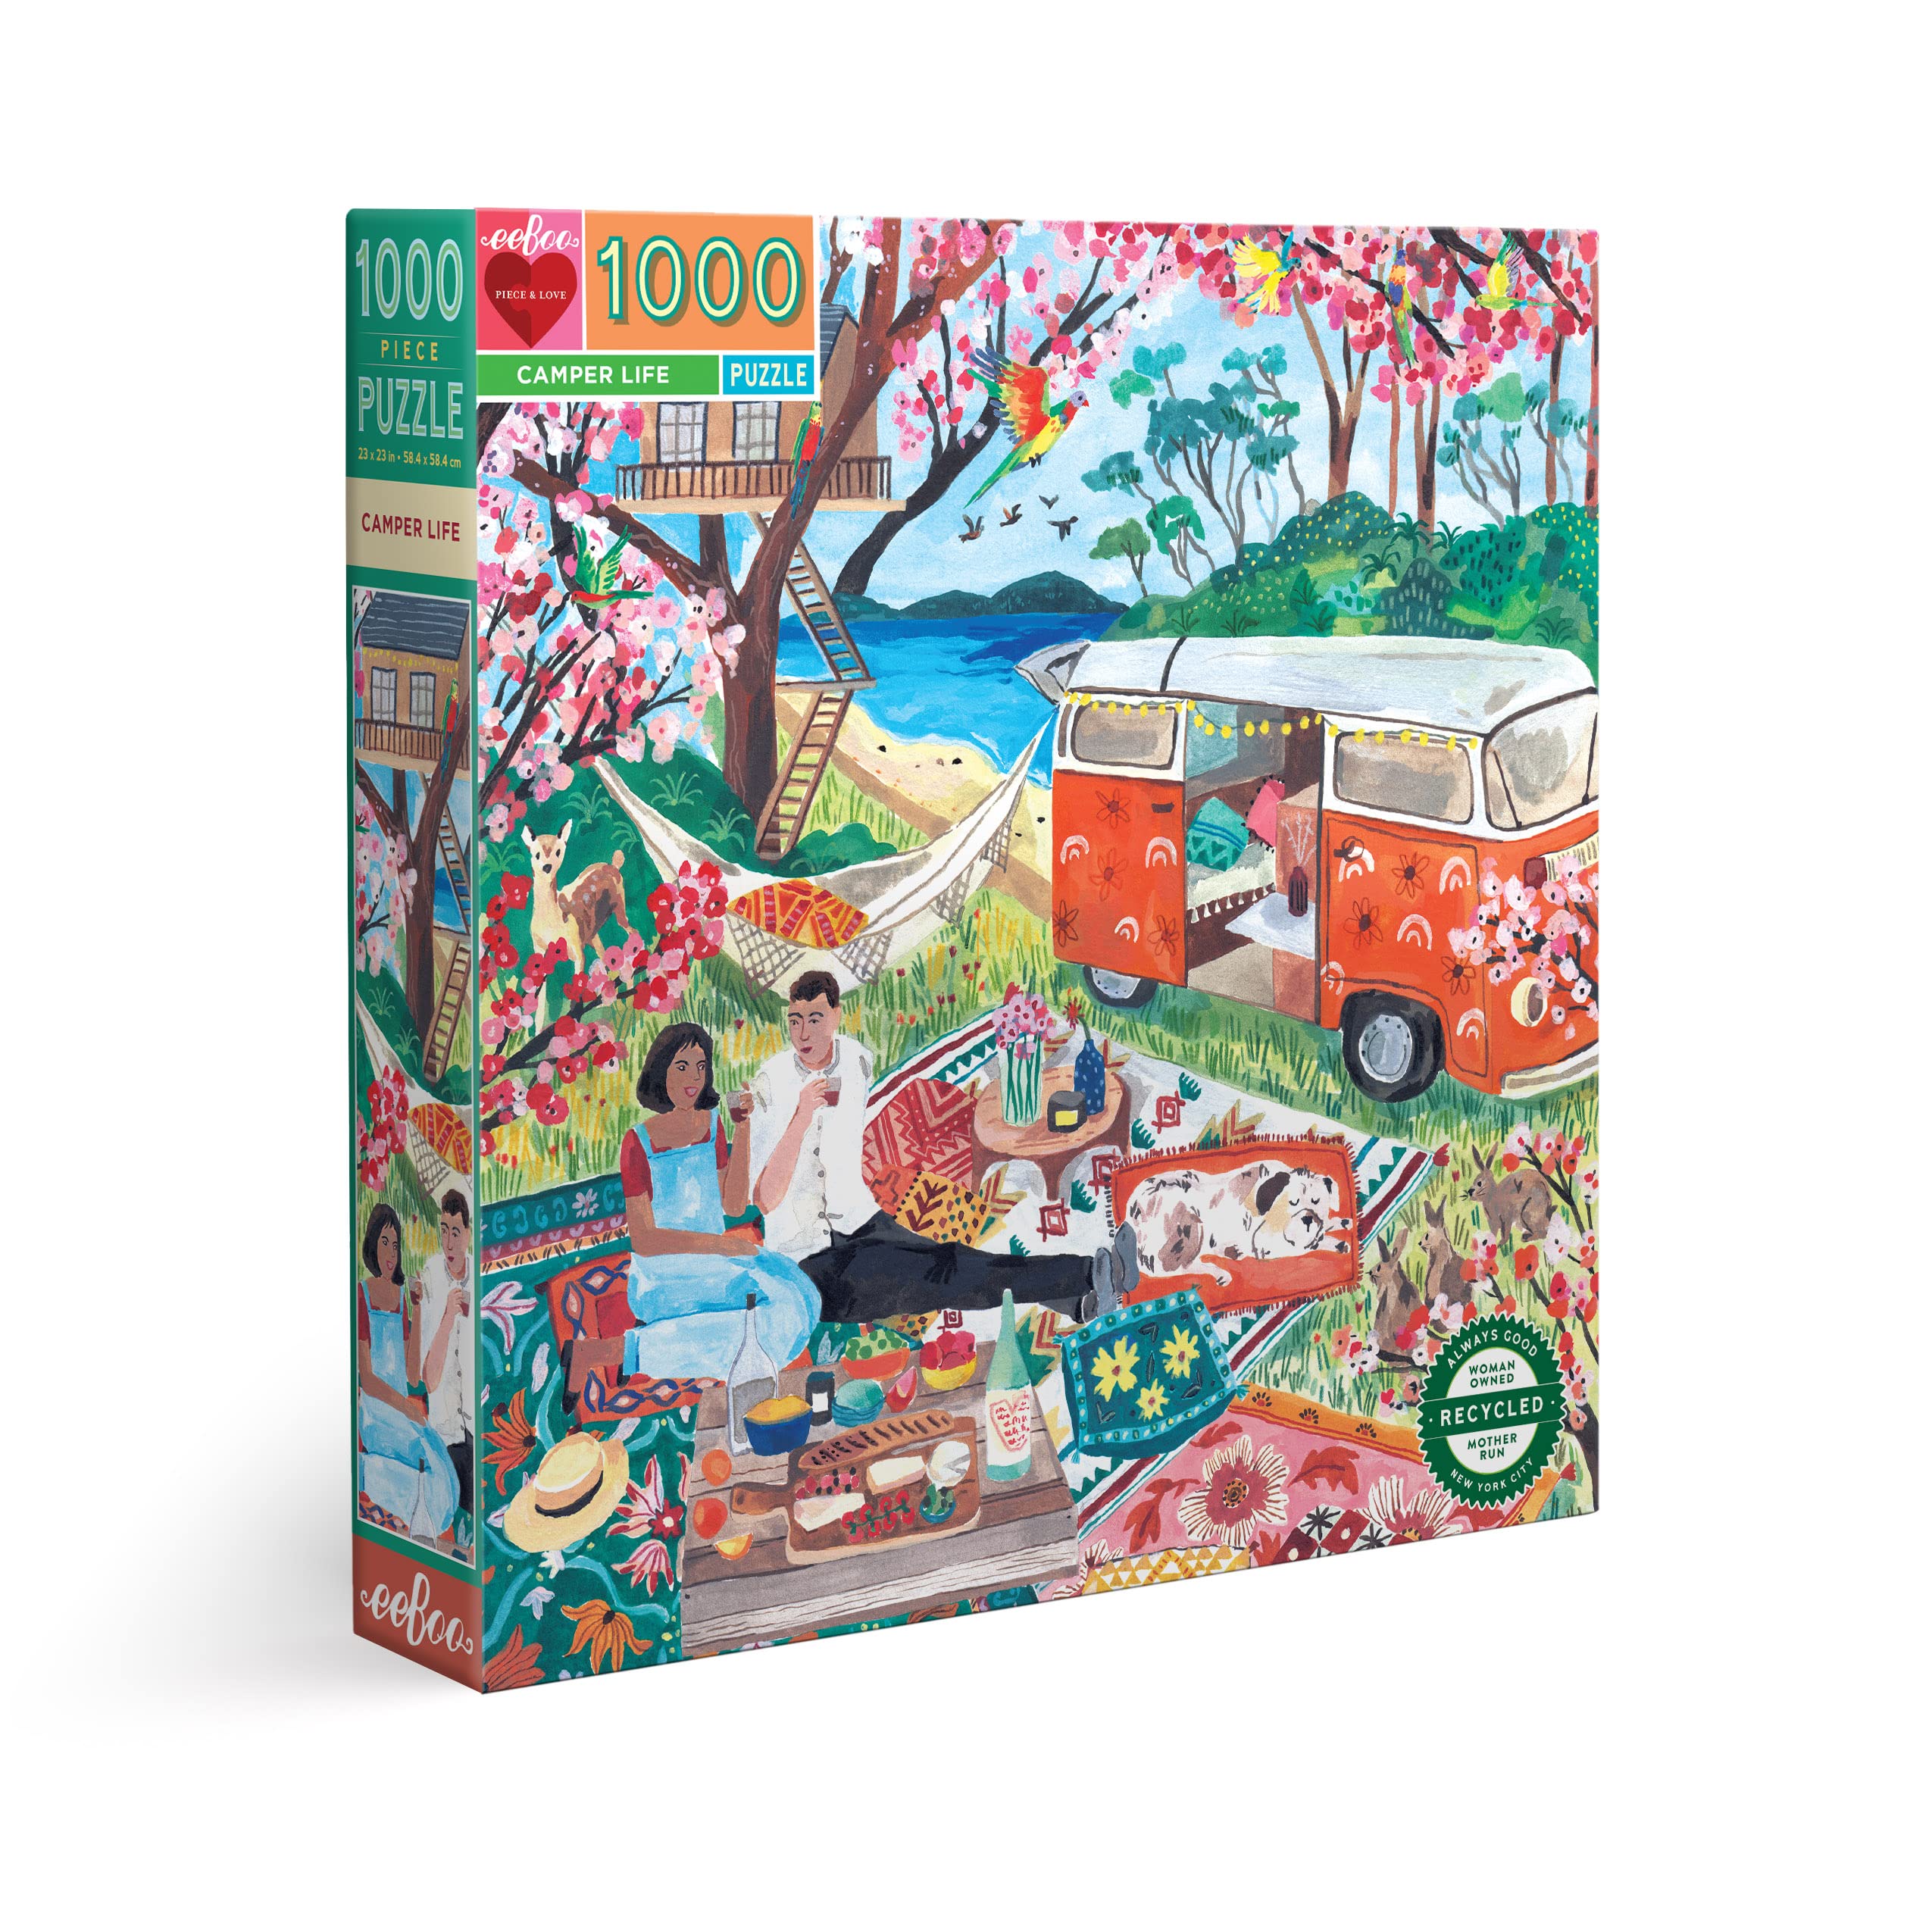 Achat eeBoo Camper Life Carton recyclé-Puzzle Adulte 1000 pièces sur la Vie de Campeur-PZTCAM, Multicolore PtvBSQmfc à vendre